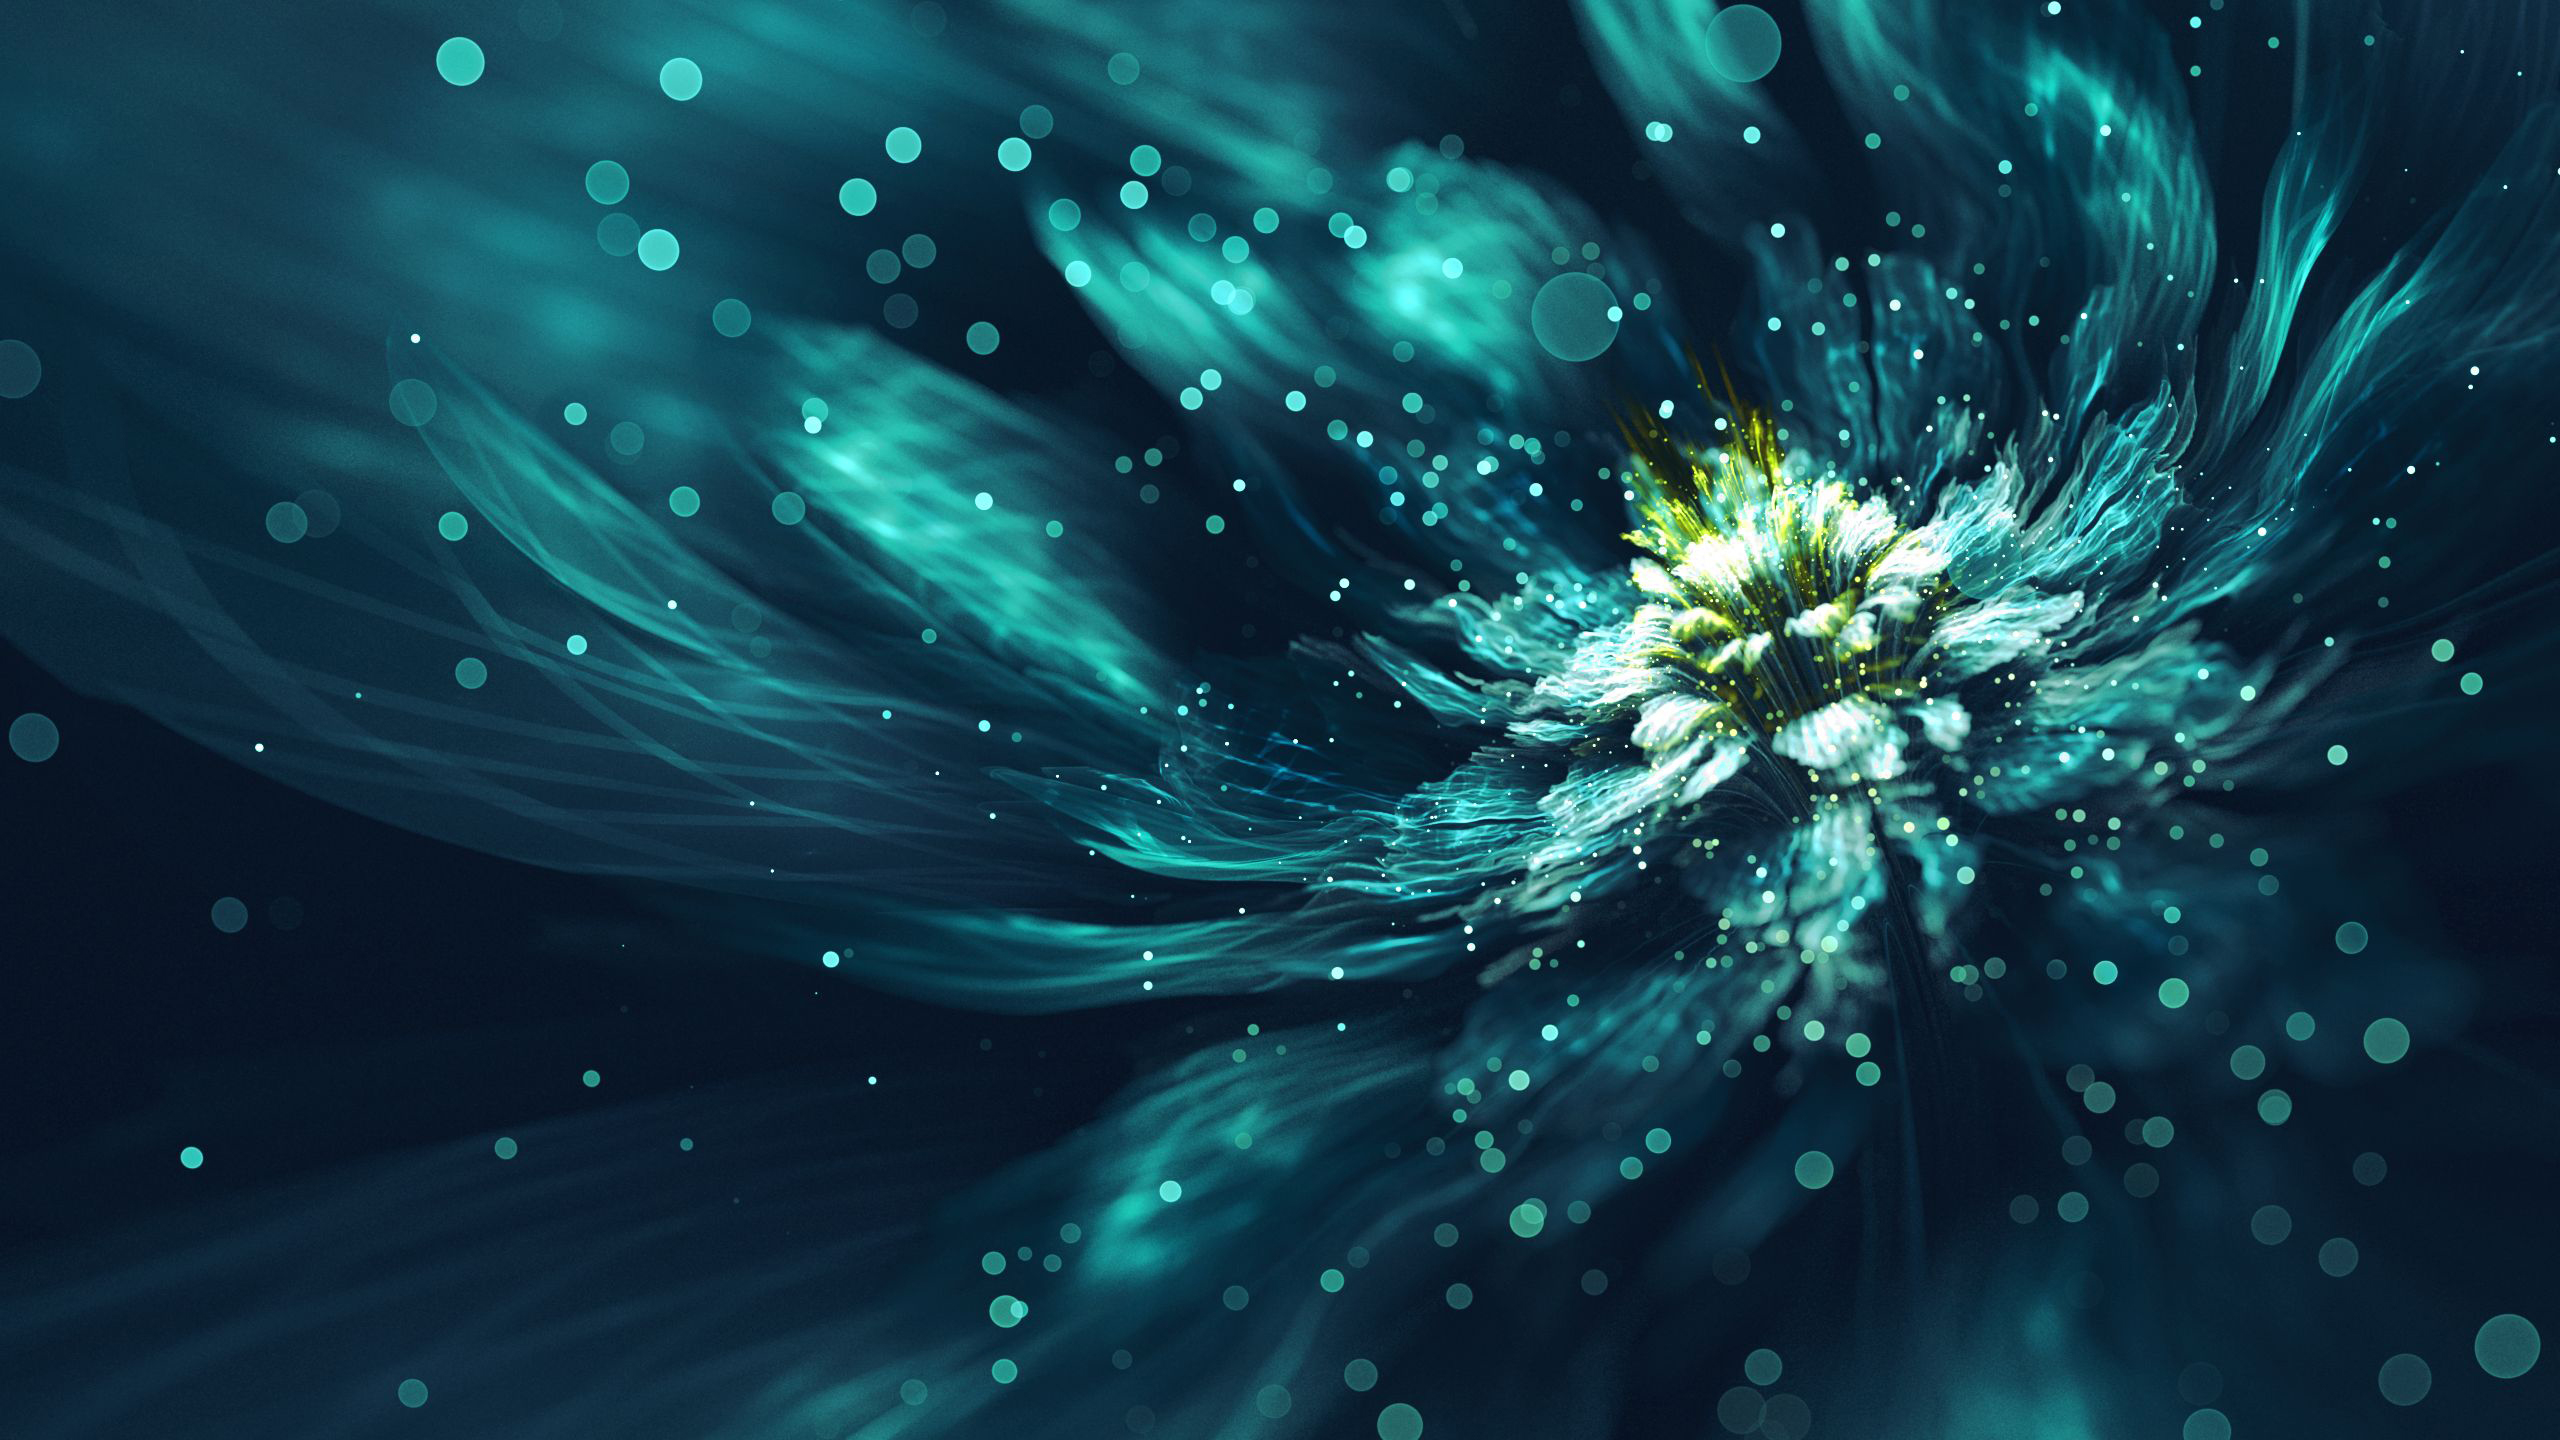 Blue Fractal Flower Wallpaper, HD Artist 4K Wallpapers, Images, Photos